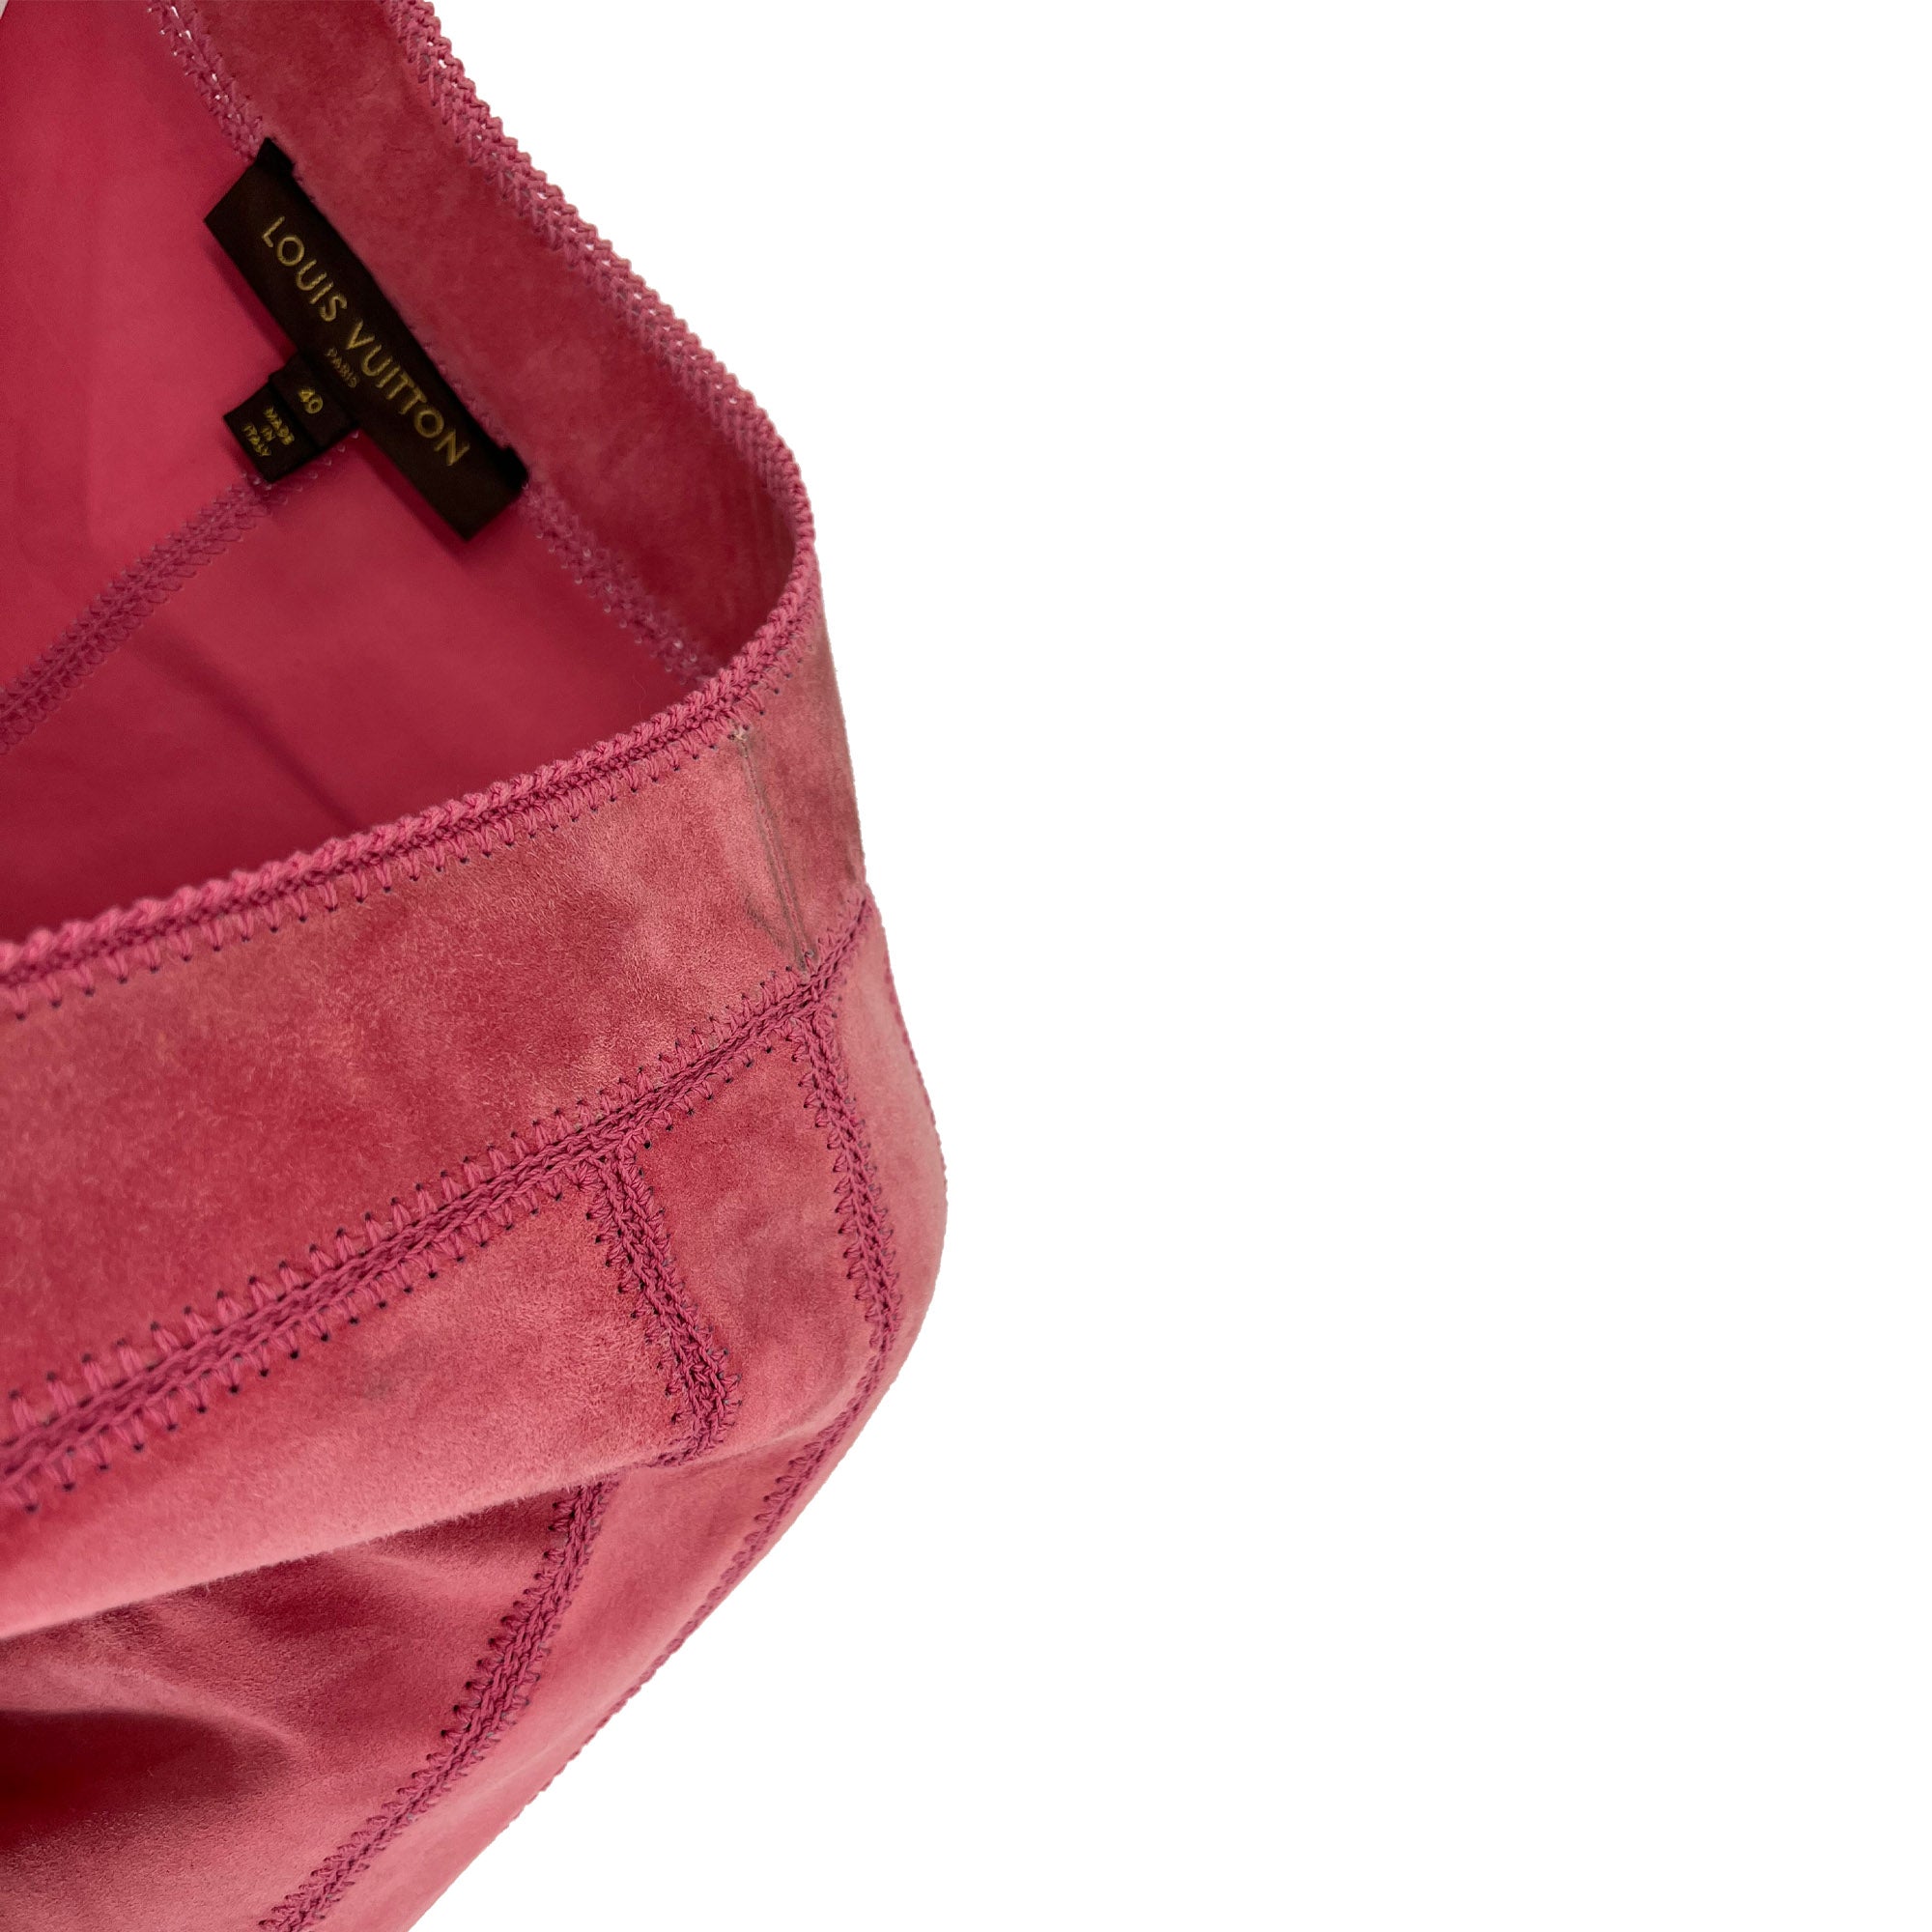 Louis Vuitton Pink Suede Short Vest